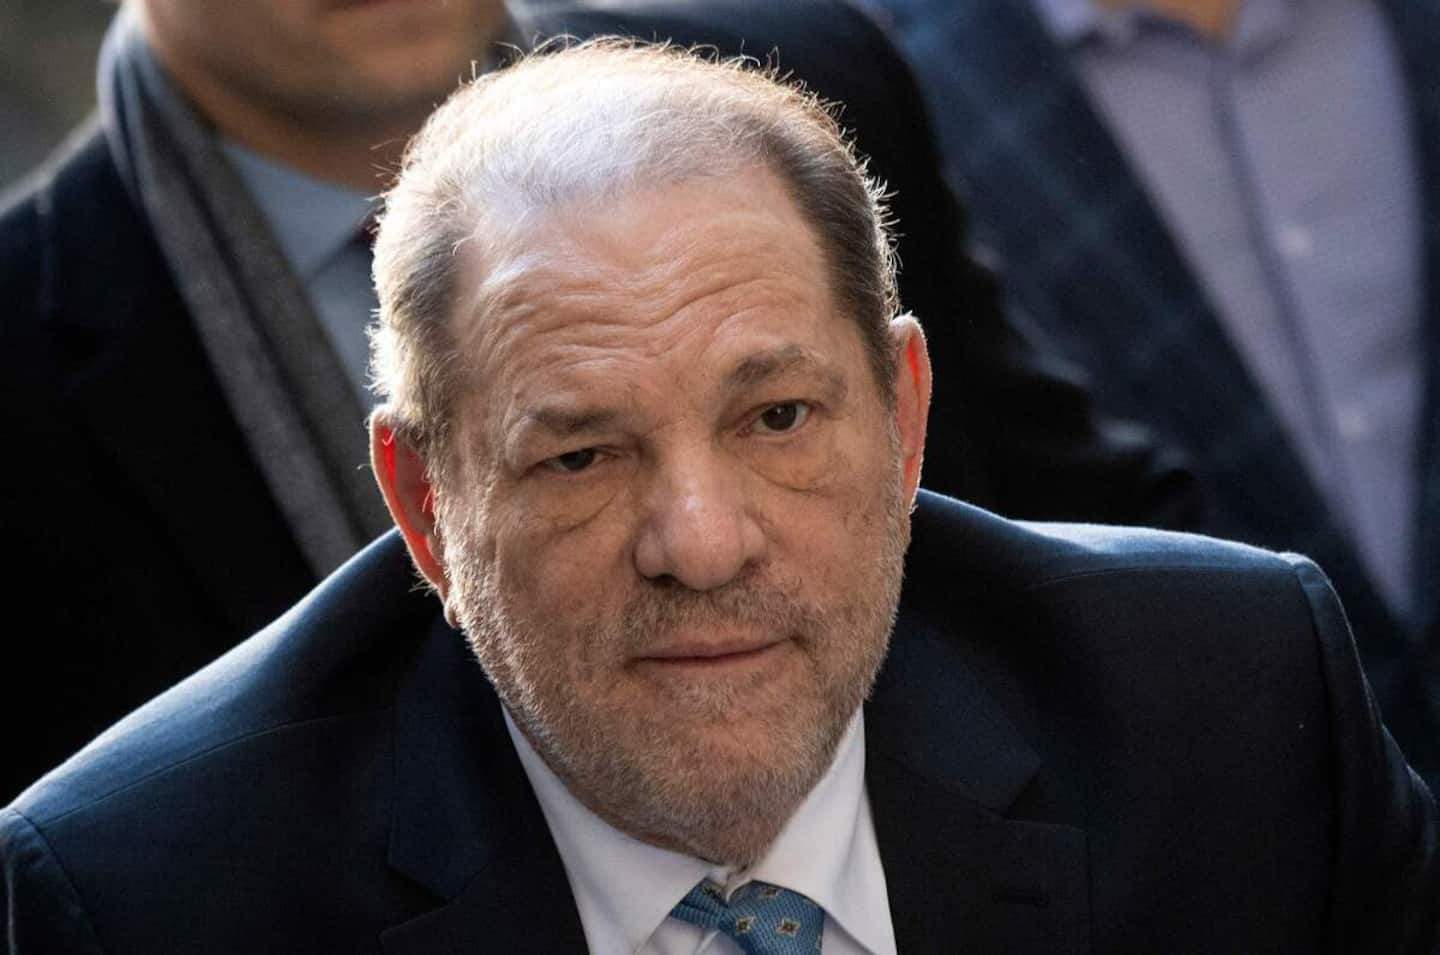 Harvey Weinstein's trial in Los Angeles will open in October